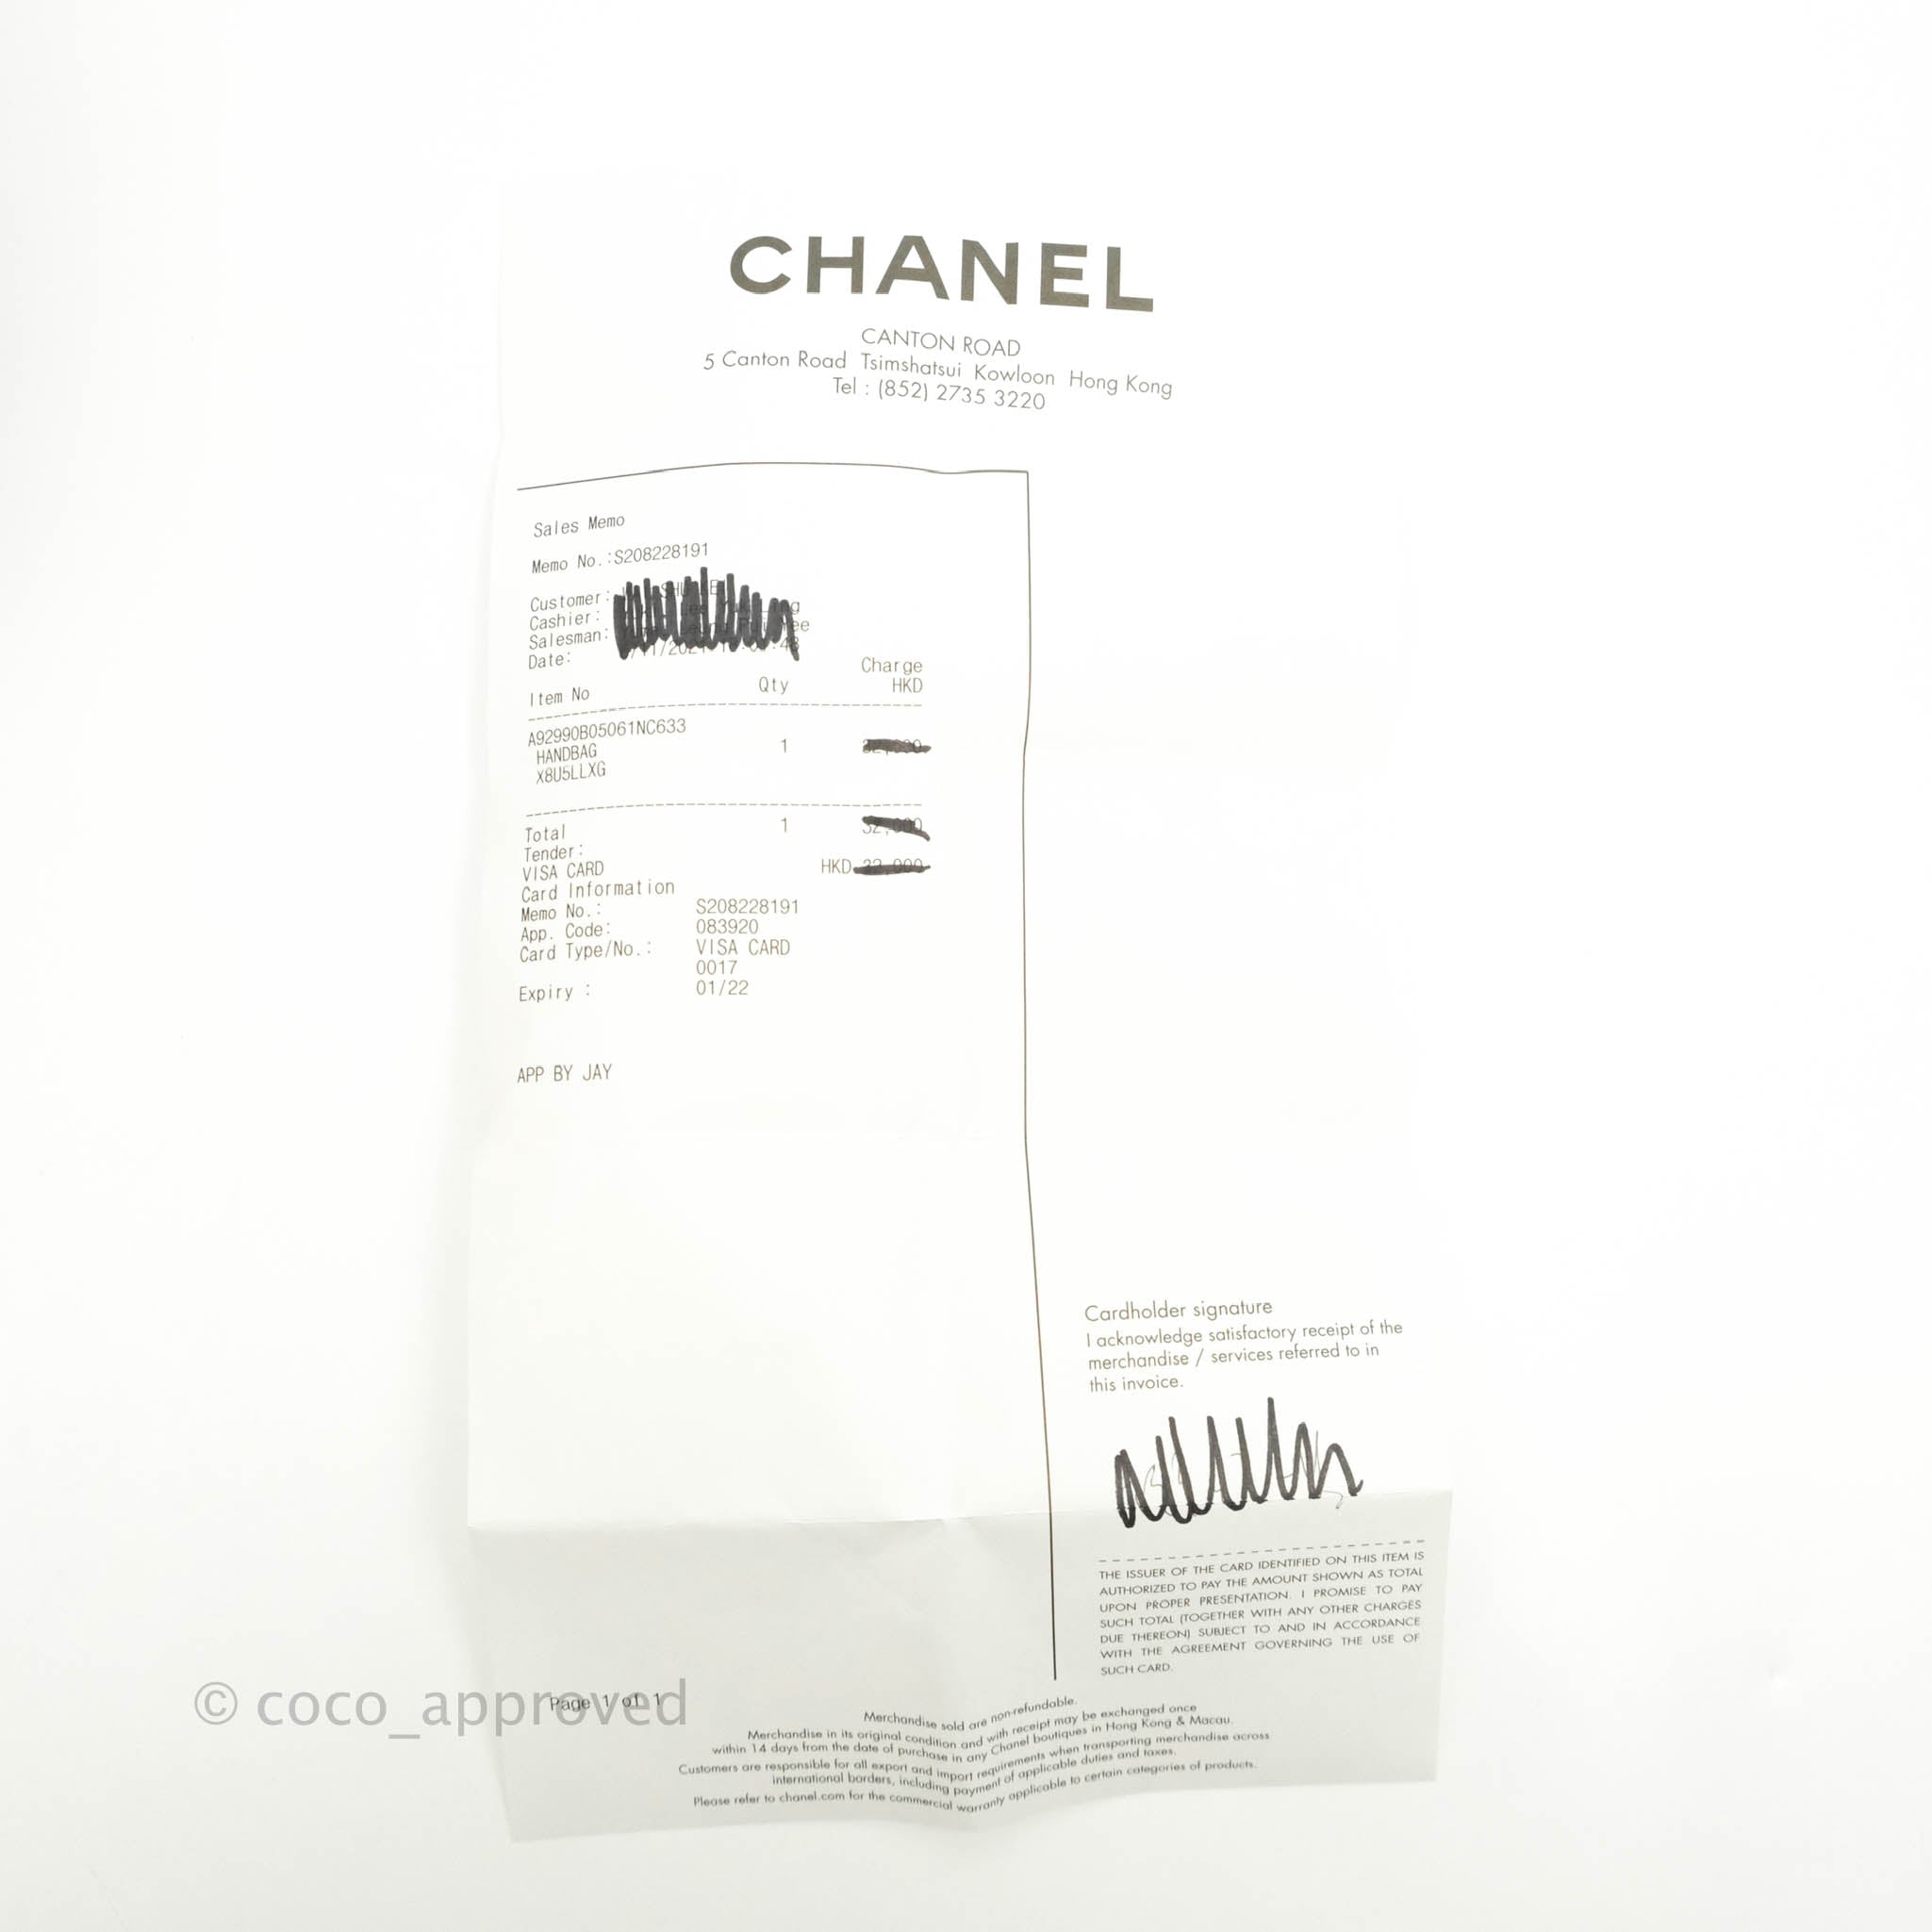 Túi xách Chanel Coco Handle Small siêu cấp da bê màu hồng size 24 cm –  A92990 – Túi xách cao cấp, những mẫu túi siêu cấp, like authentic cực đẹp